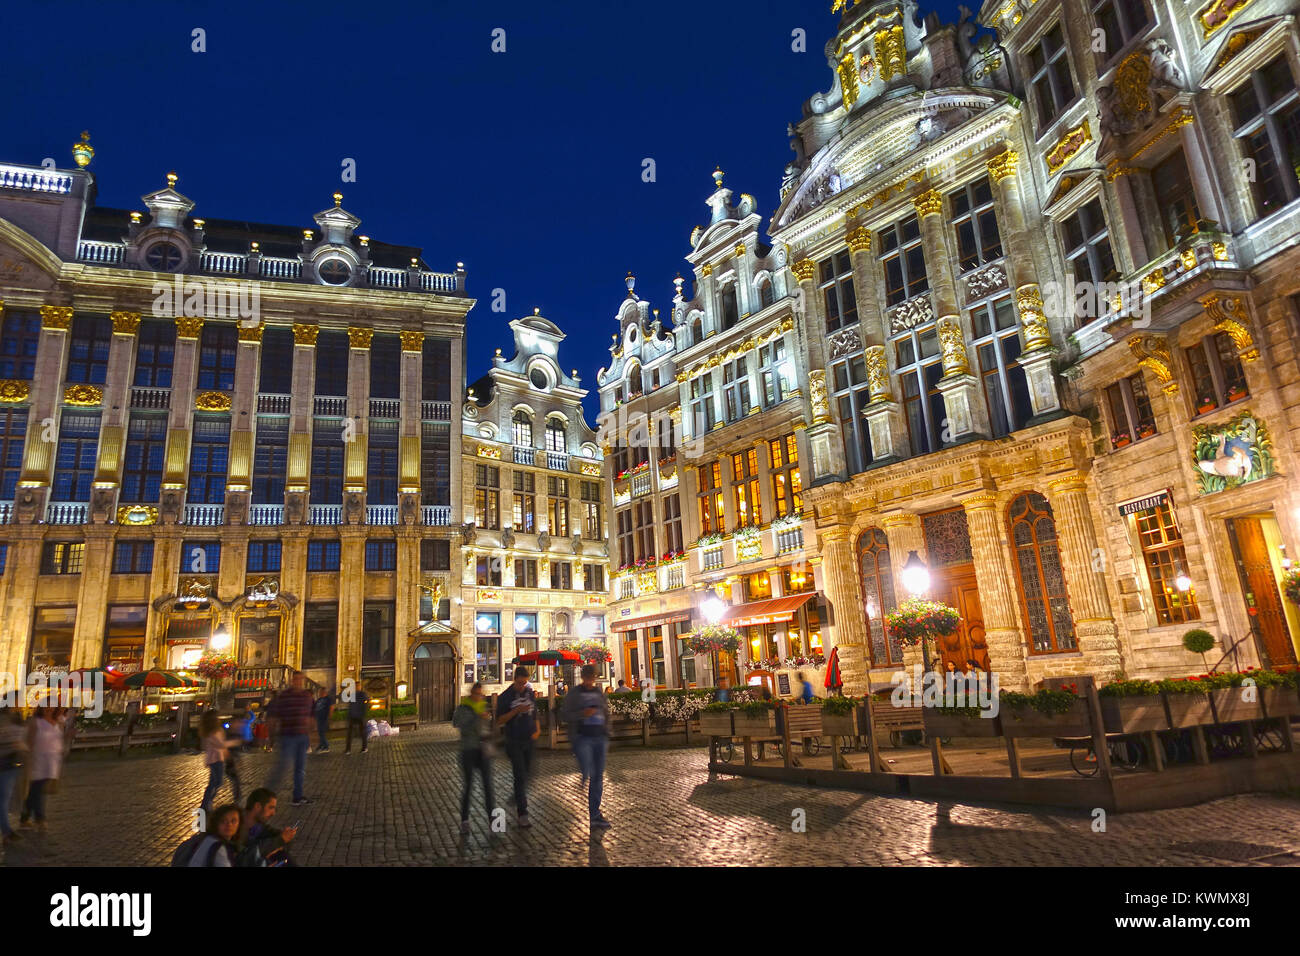 Bruselas, Bélgica - 4 de agosto de 2016: Los turistas en la Grand Place (Grote Markt) en Bruselas, Bélgica. El lugar central en Bruselas, Patrimonio Mundial de la UNESCO. Foto de stock